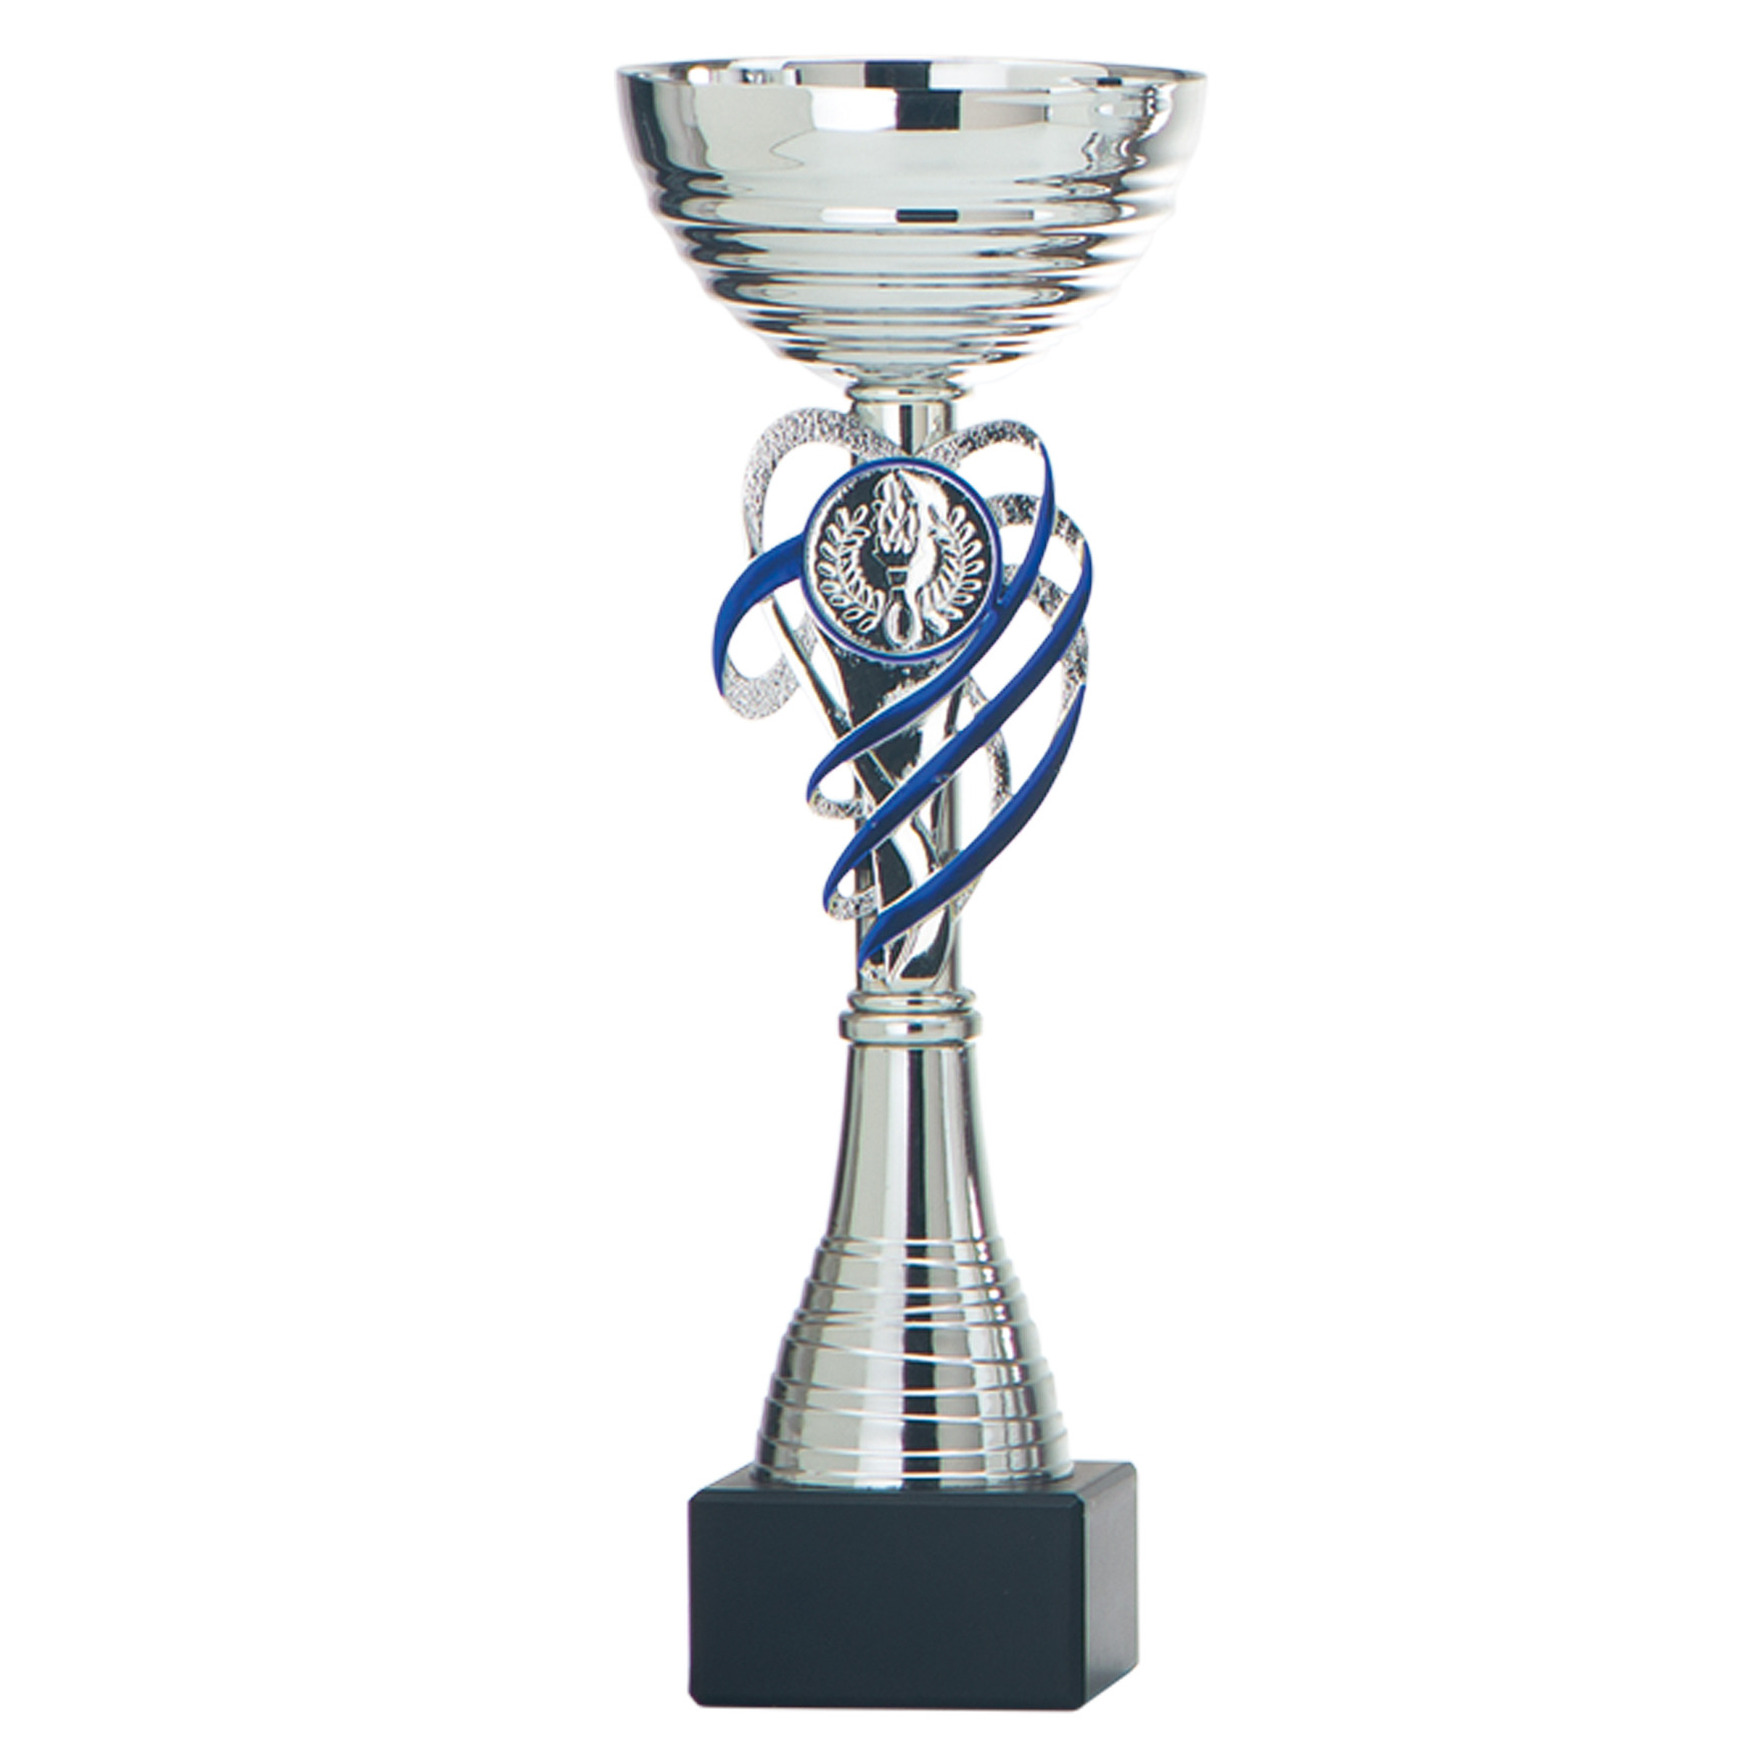 Luxe trofee-prijs beker zilver-blauw decoratie kunststof 22 x 8 cm